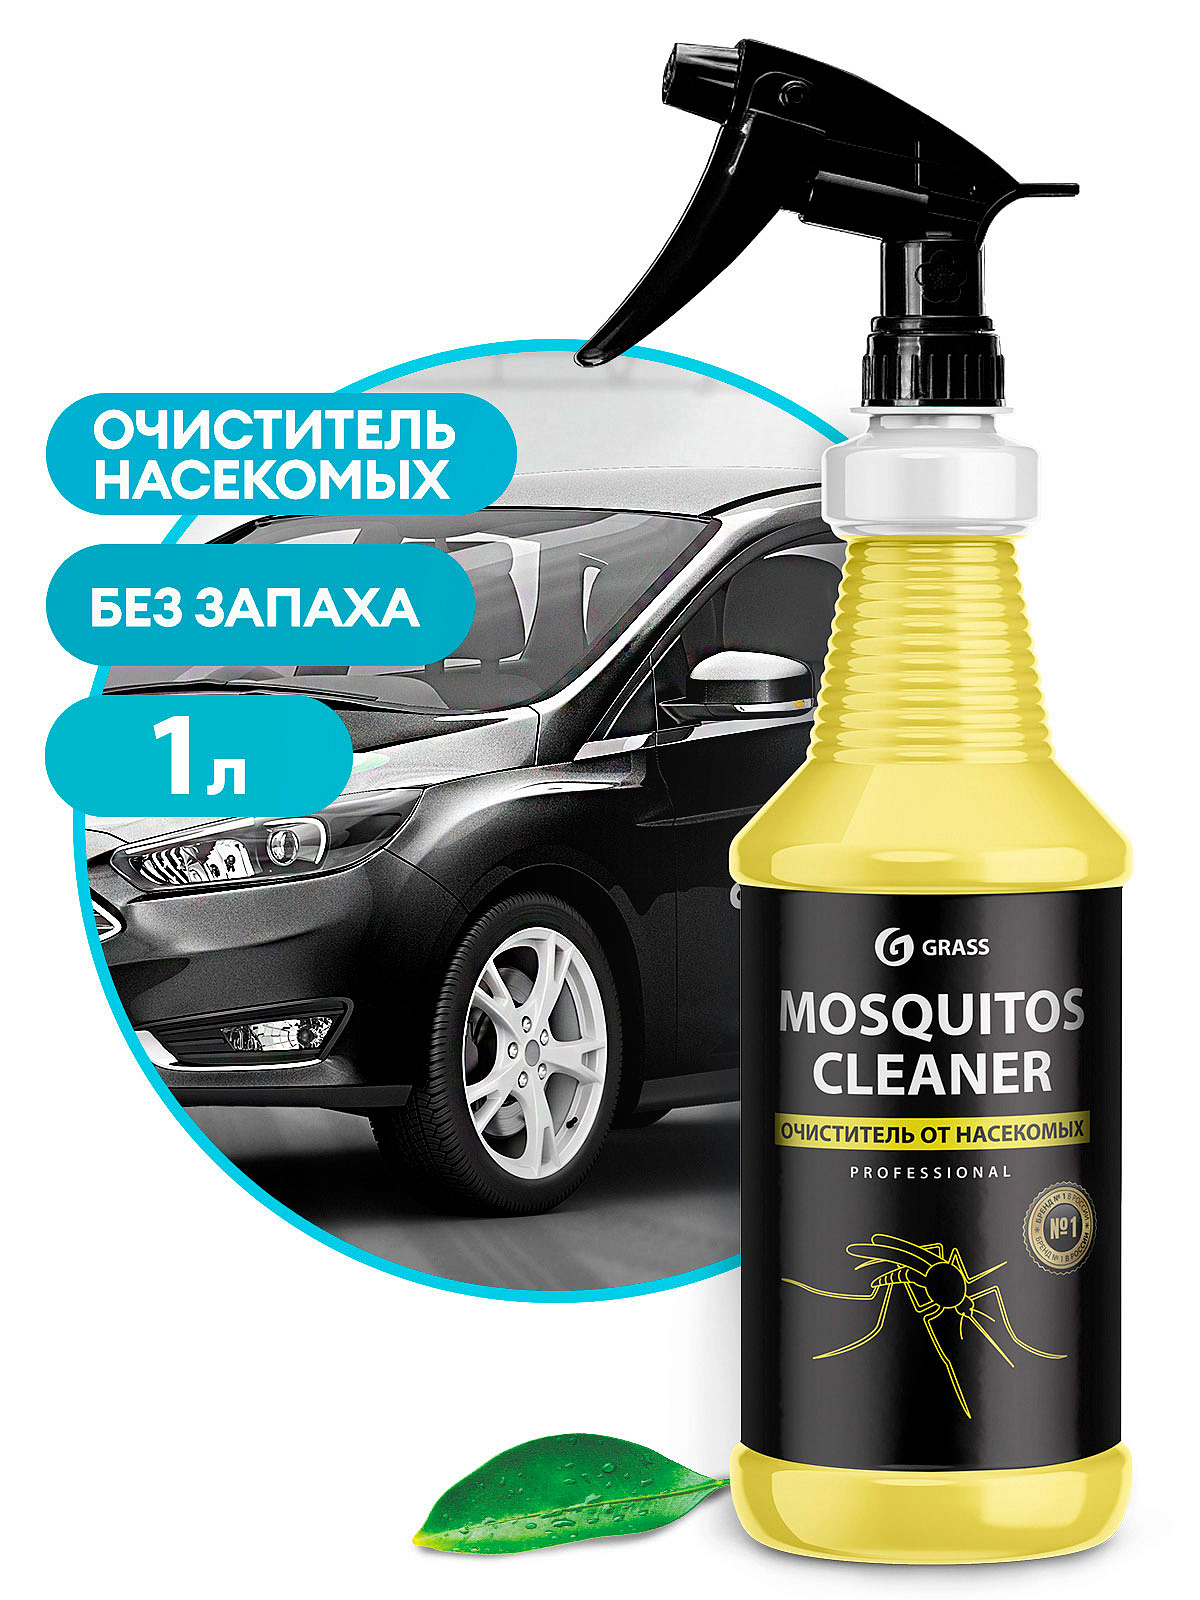 Очиститель следов насекомых "Mosquitos Cleaner" проф. линейка (флакон 1л)